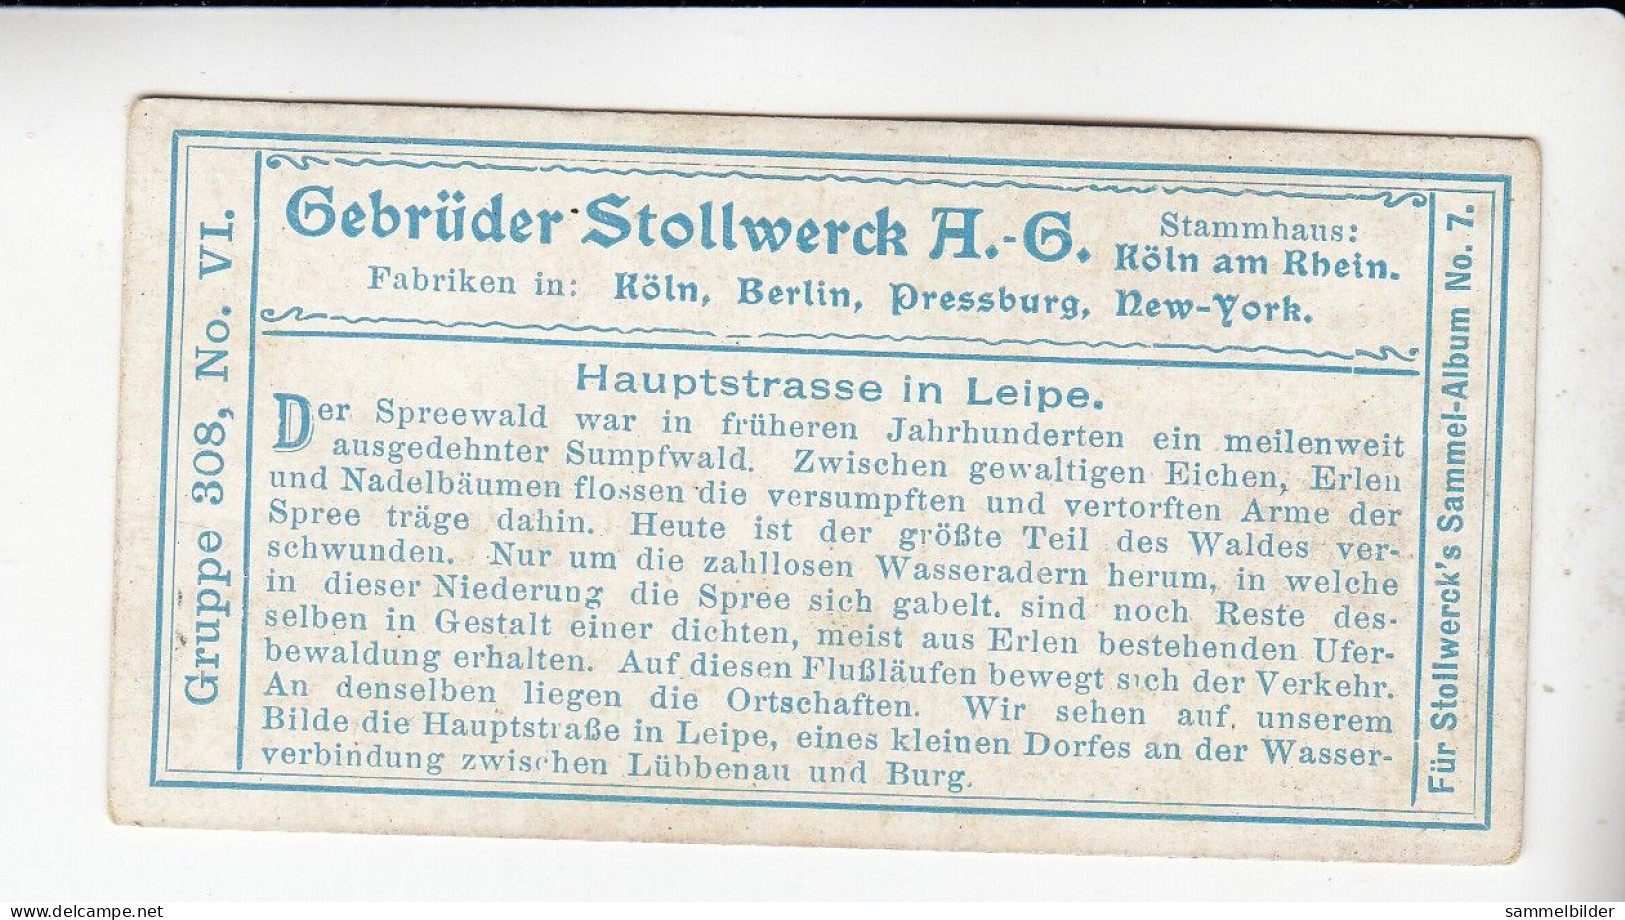 Stollwerck Album No 7 Spreewald Hauptstrasse In Leipe      Grp 308#6 Von 1904/05 - Stollwerck